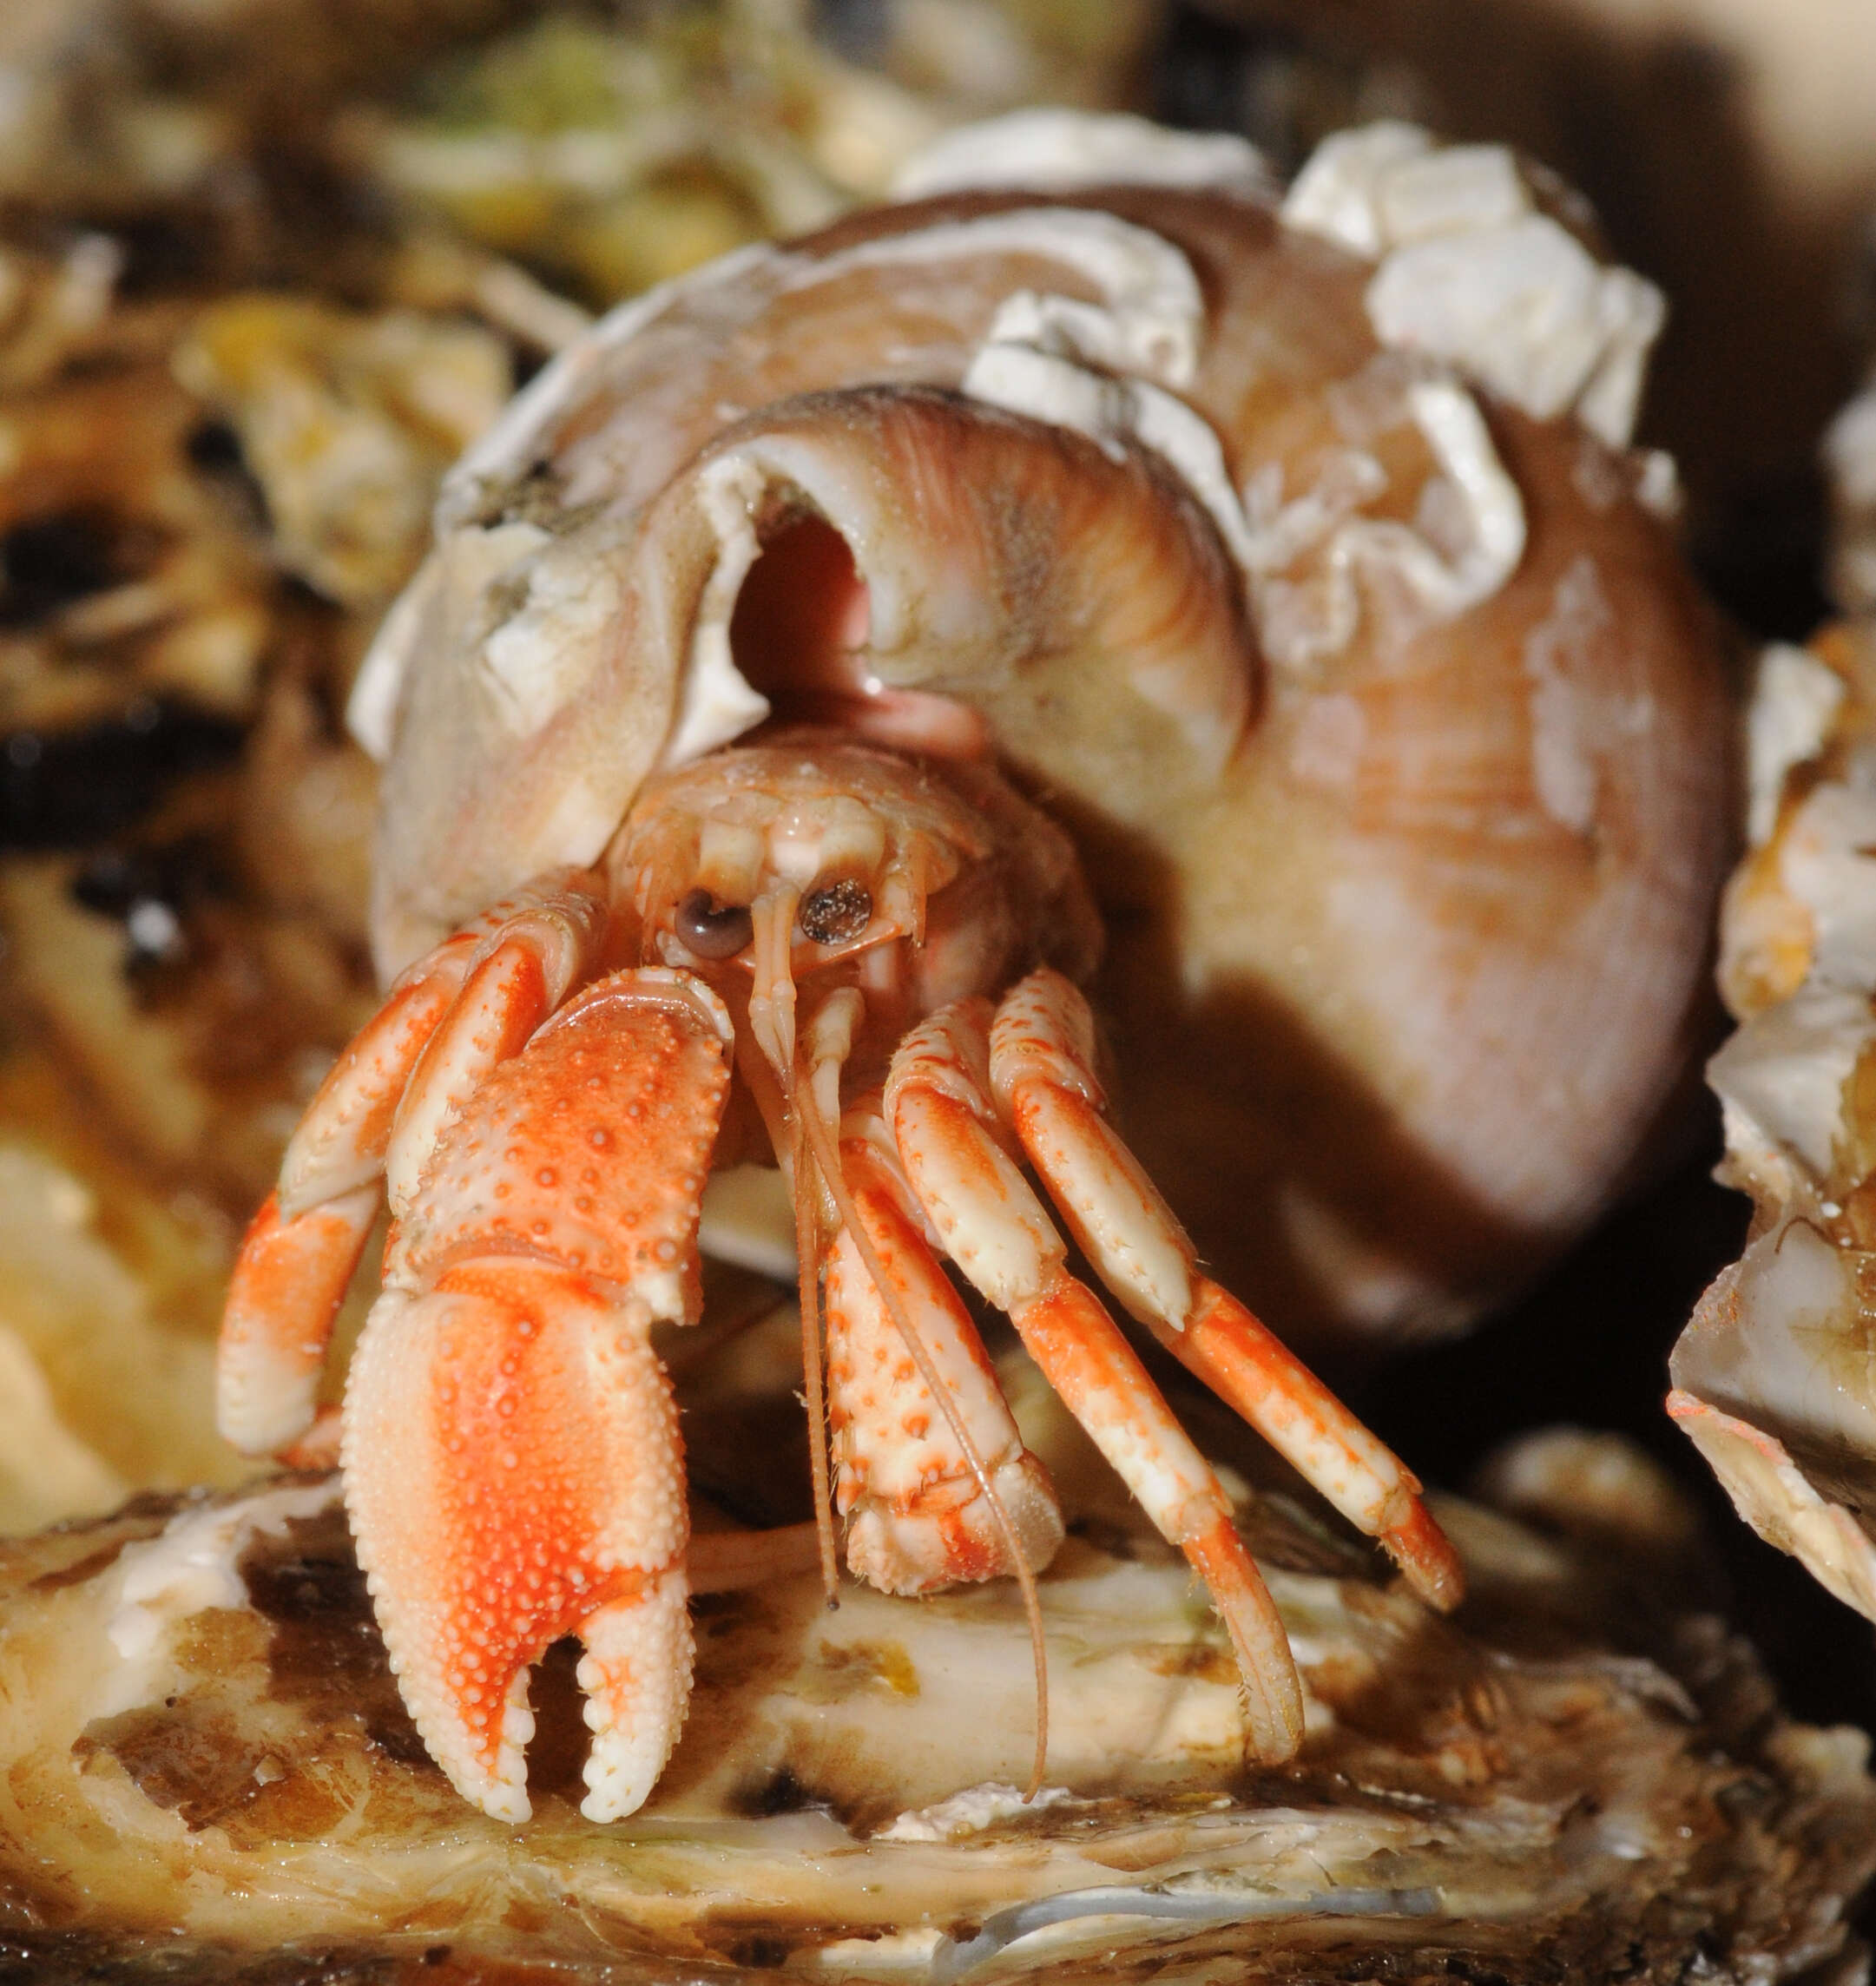 Image of Common hermit crab